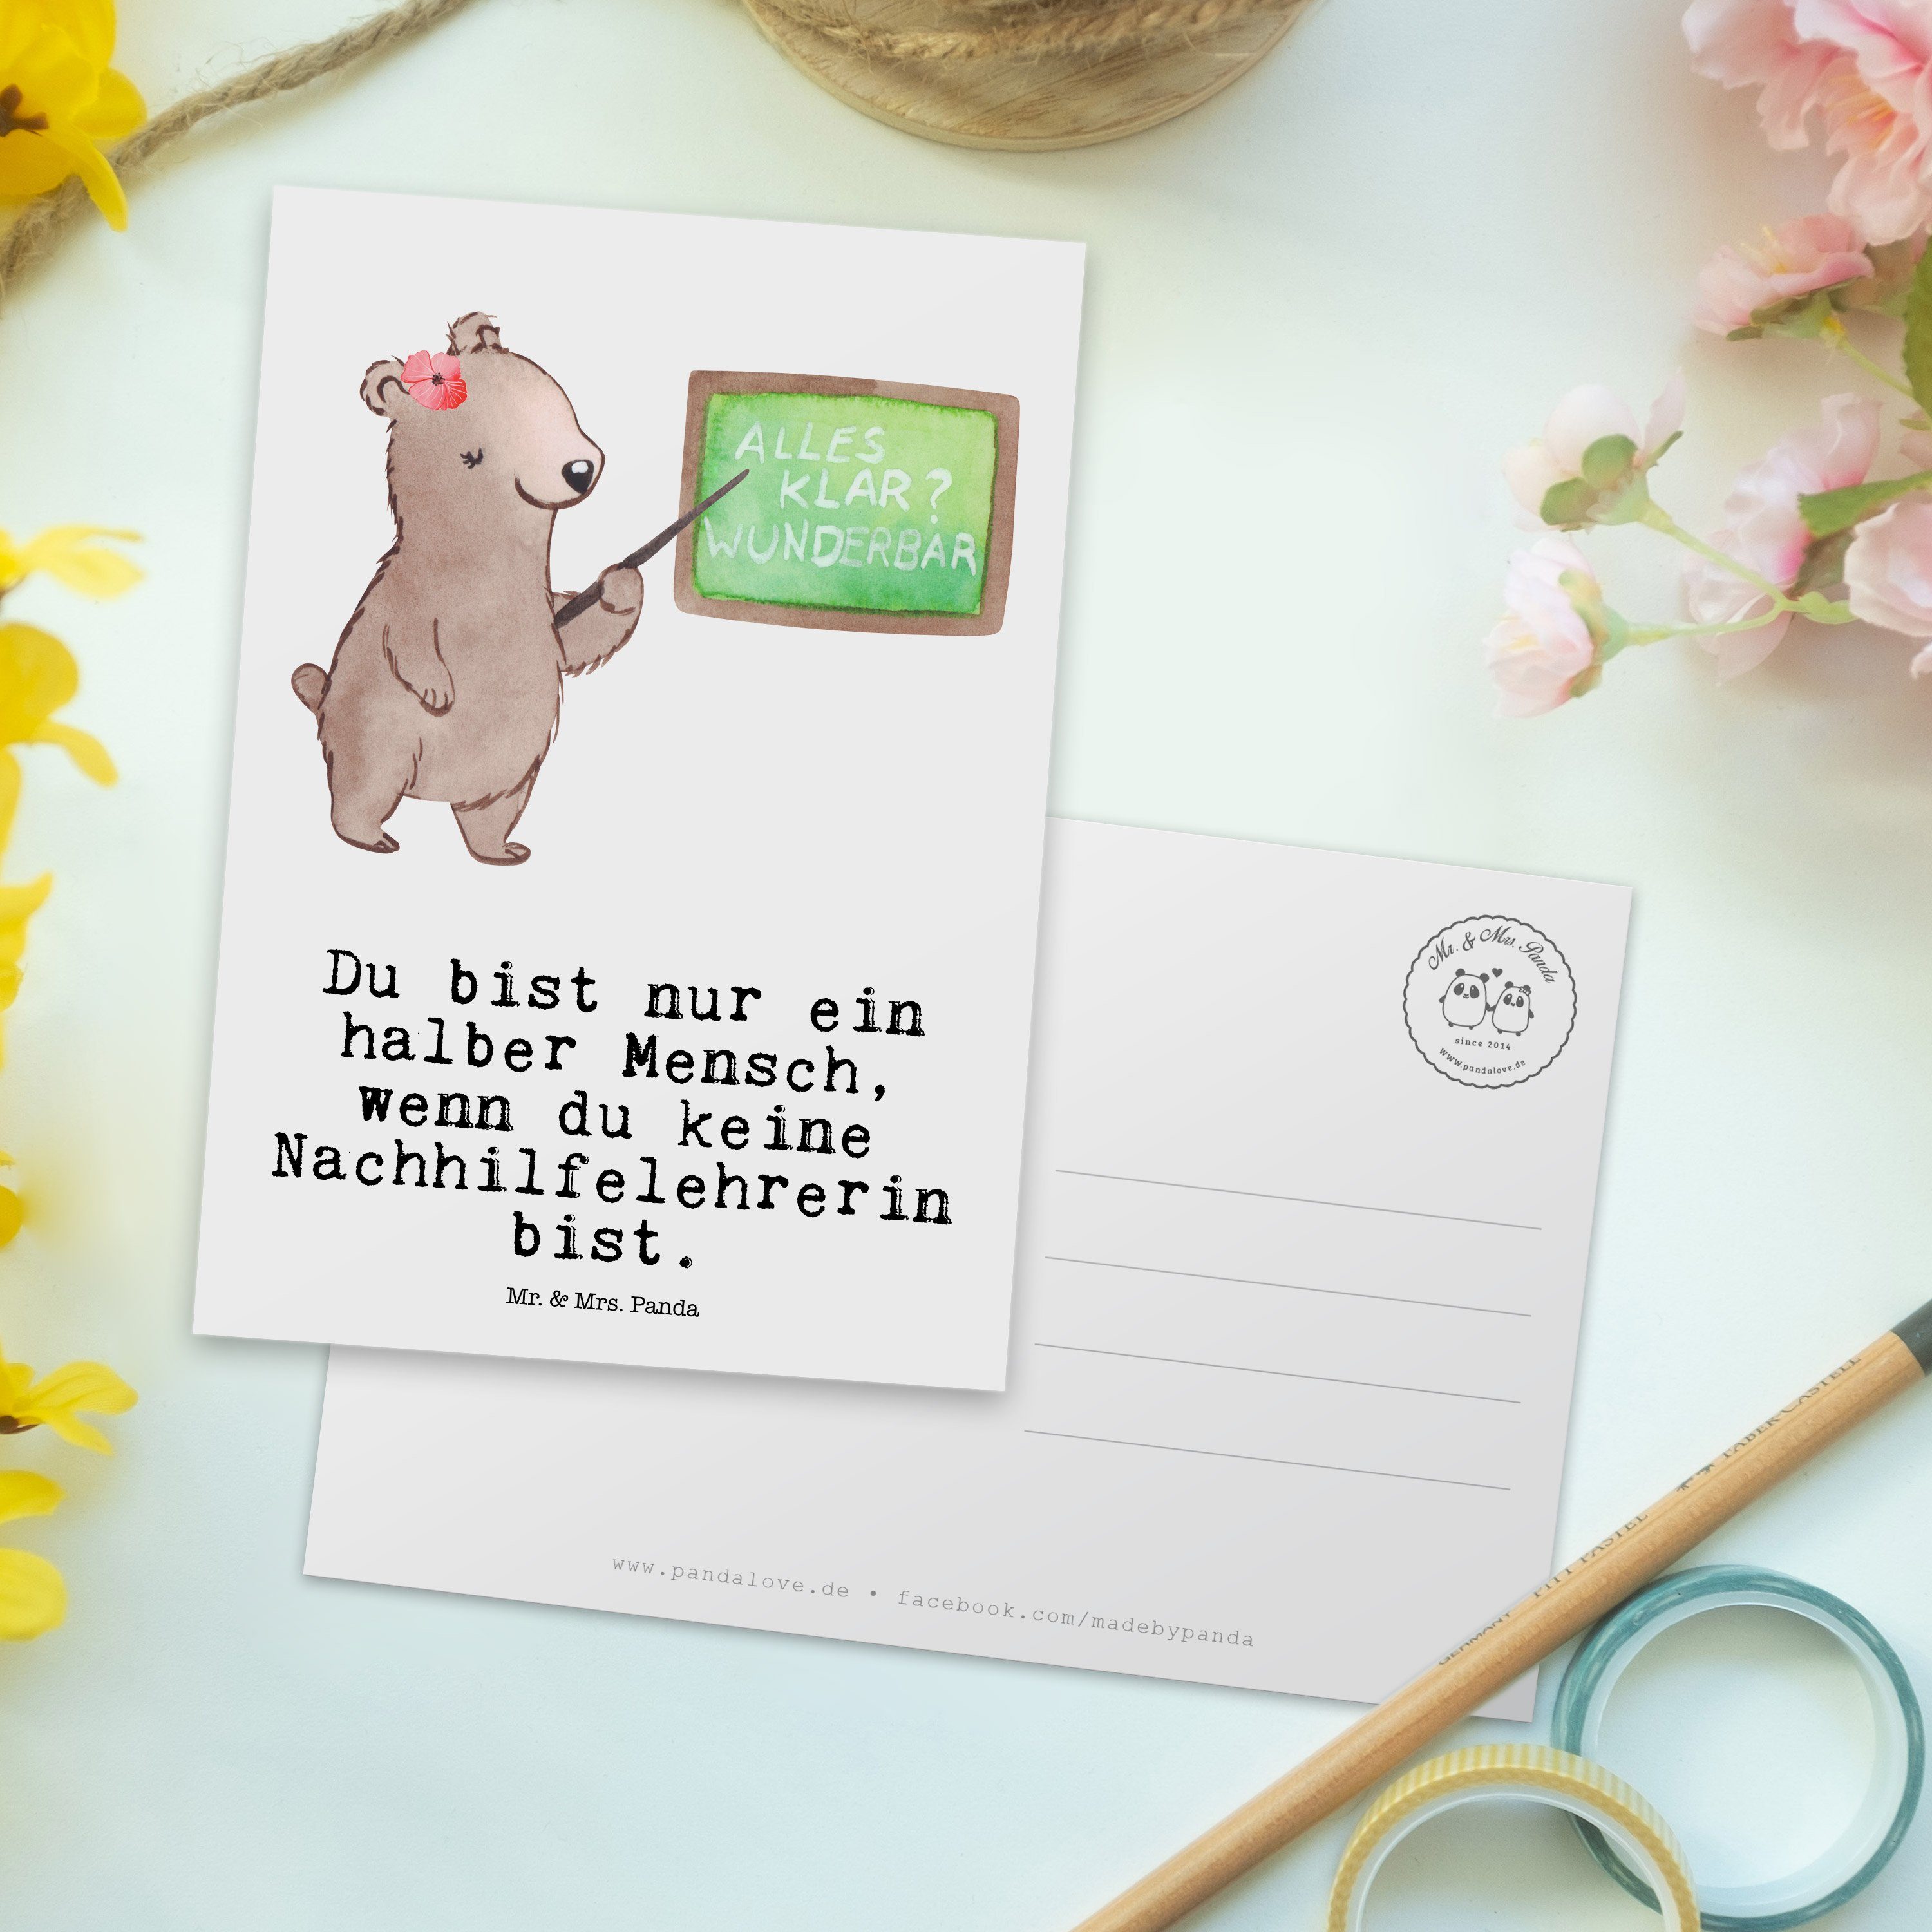 Mr. & Mrs. Panda Postkarte mit Weiß - Geschenk, Nachhilfelehrerin - Grußka Herz Nachhilfeschule